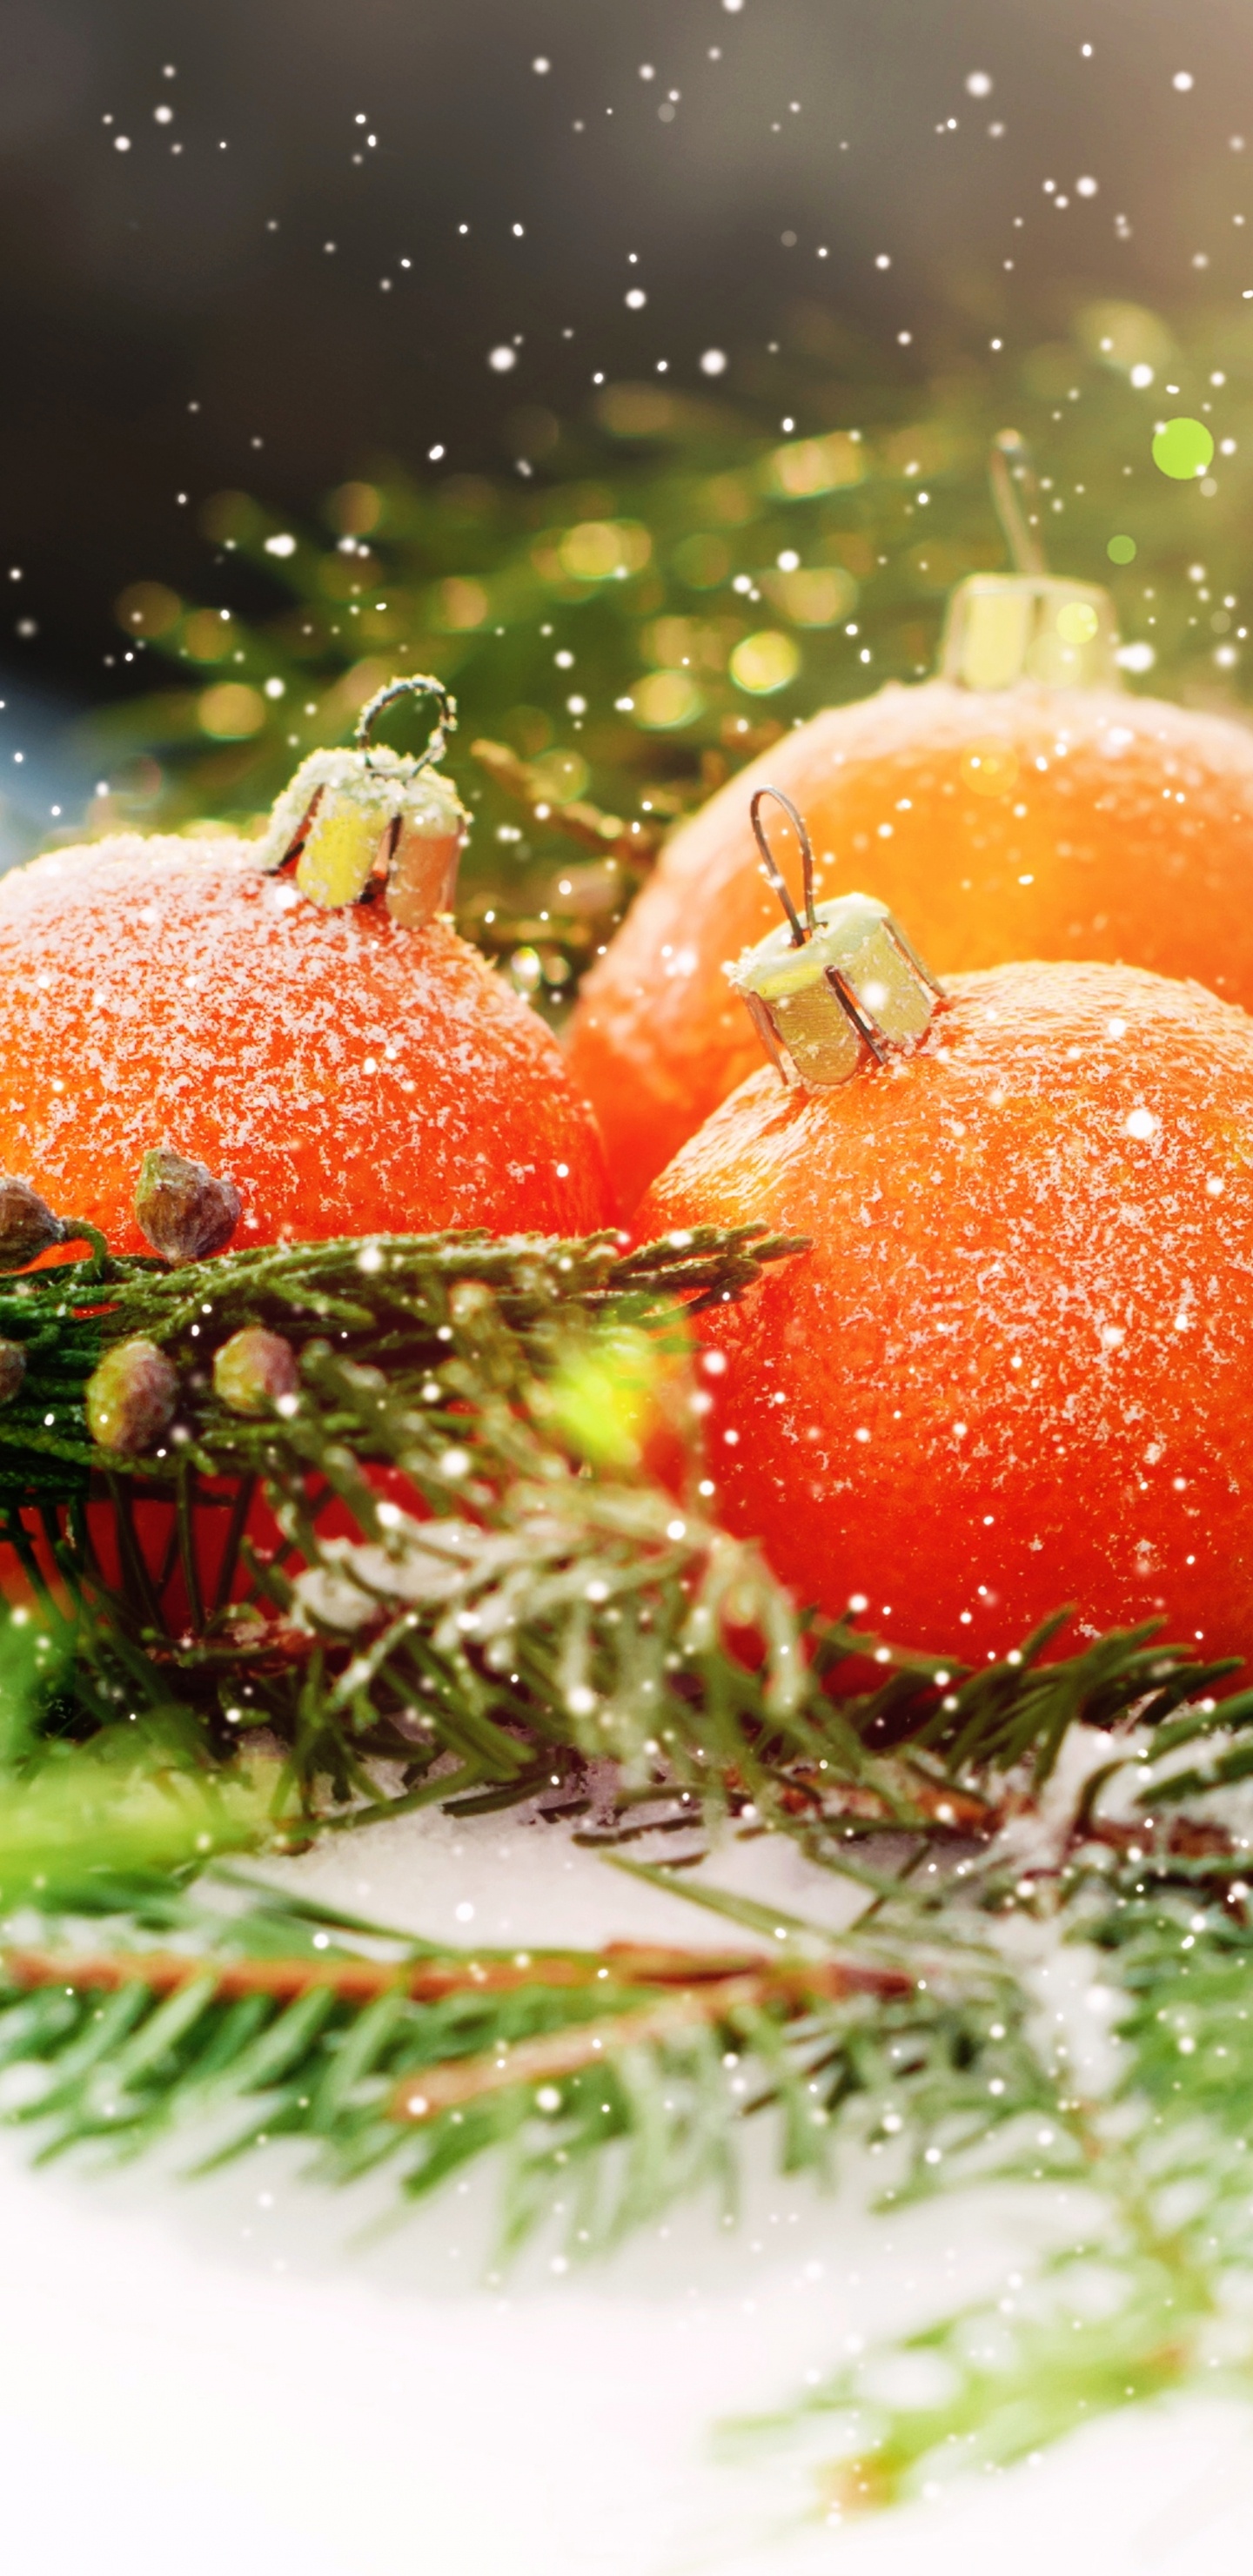 Le Jour De Noël, Nouvelle Année, la Nourriture Végétarienne, Aliment, Fruits. Wallpaper in 1440x2960 Resolution